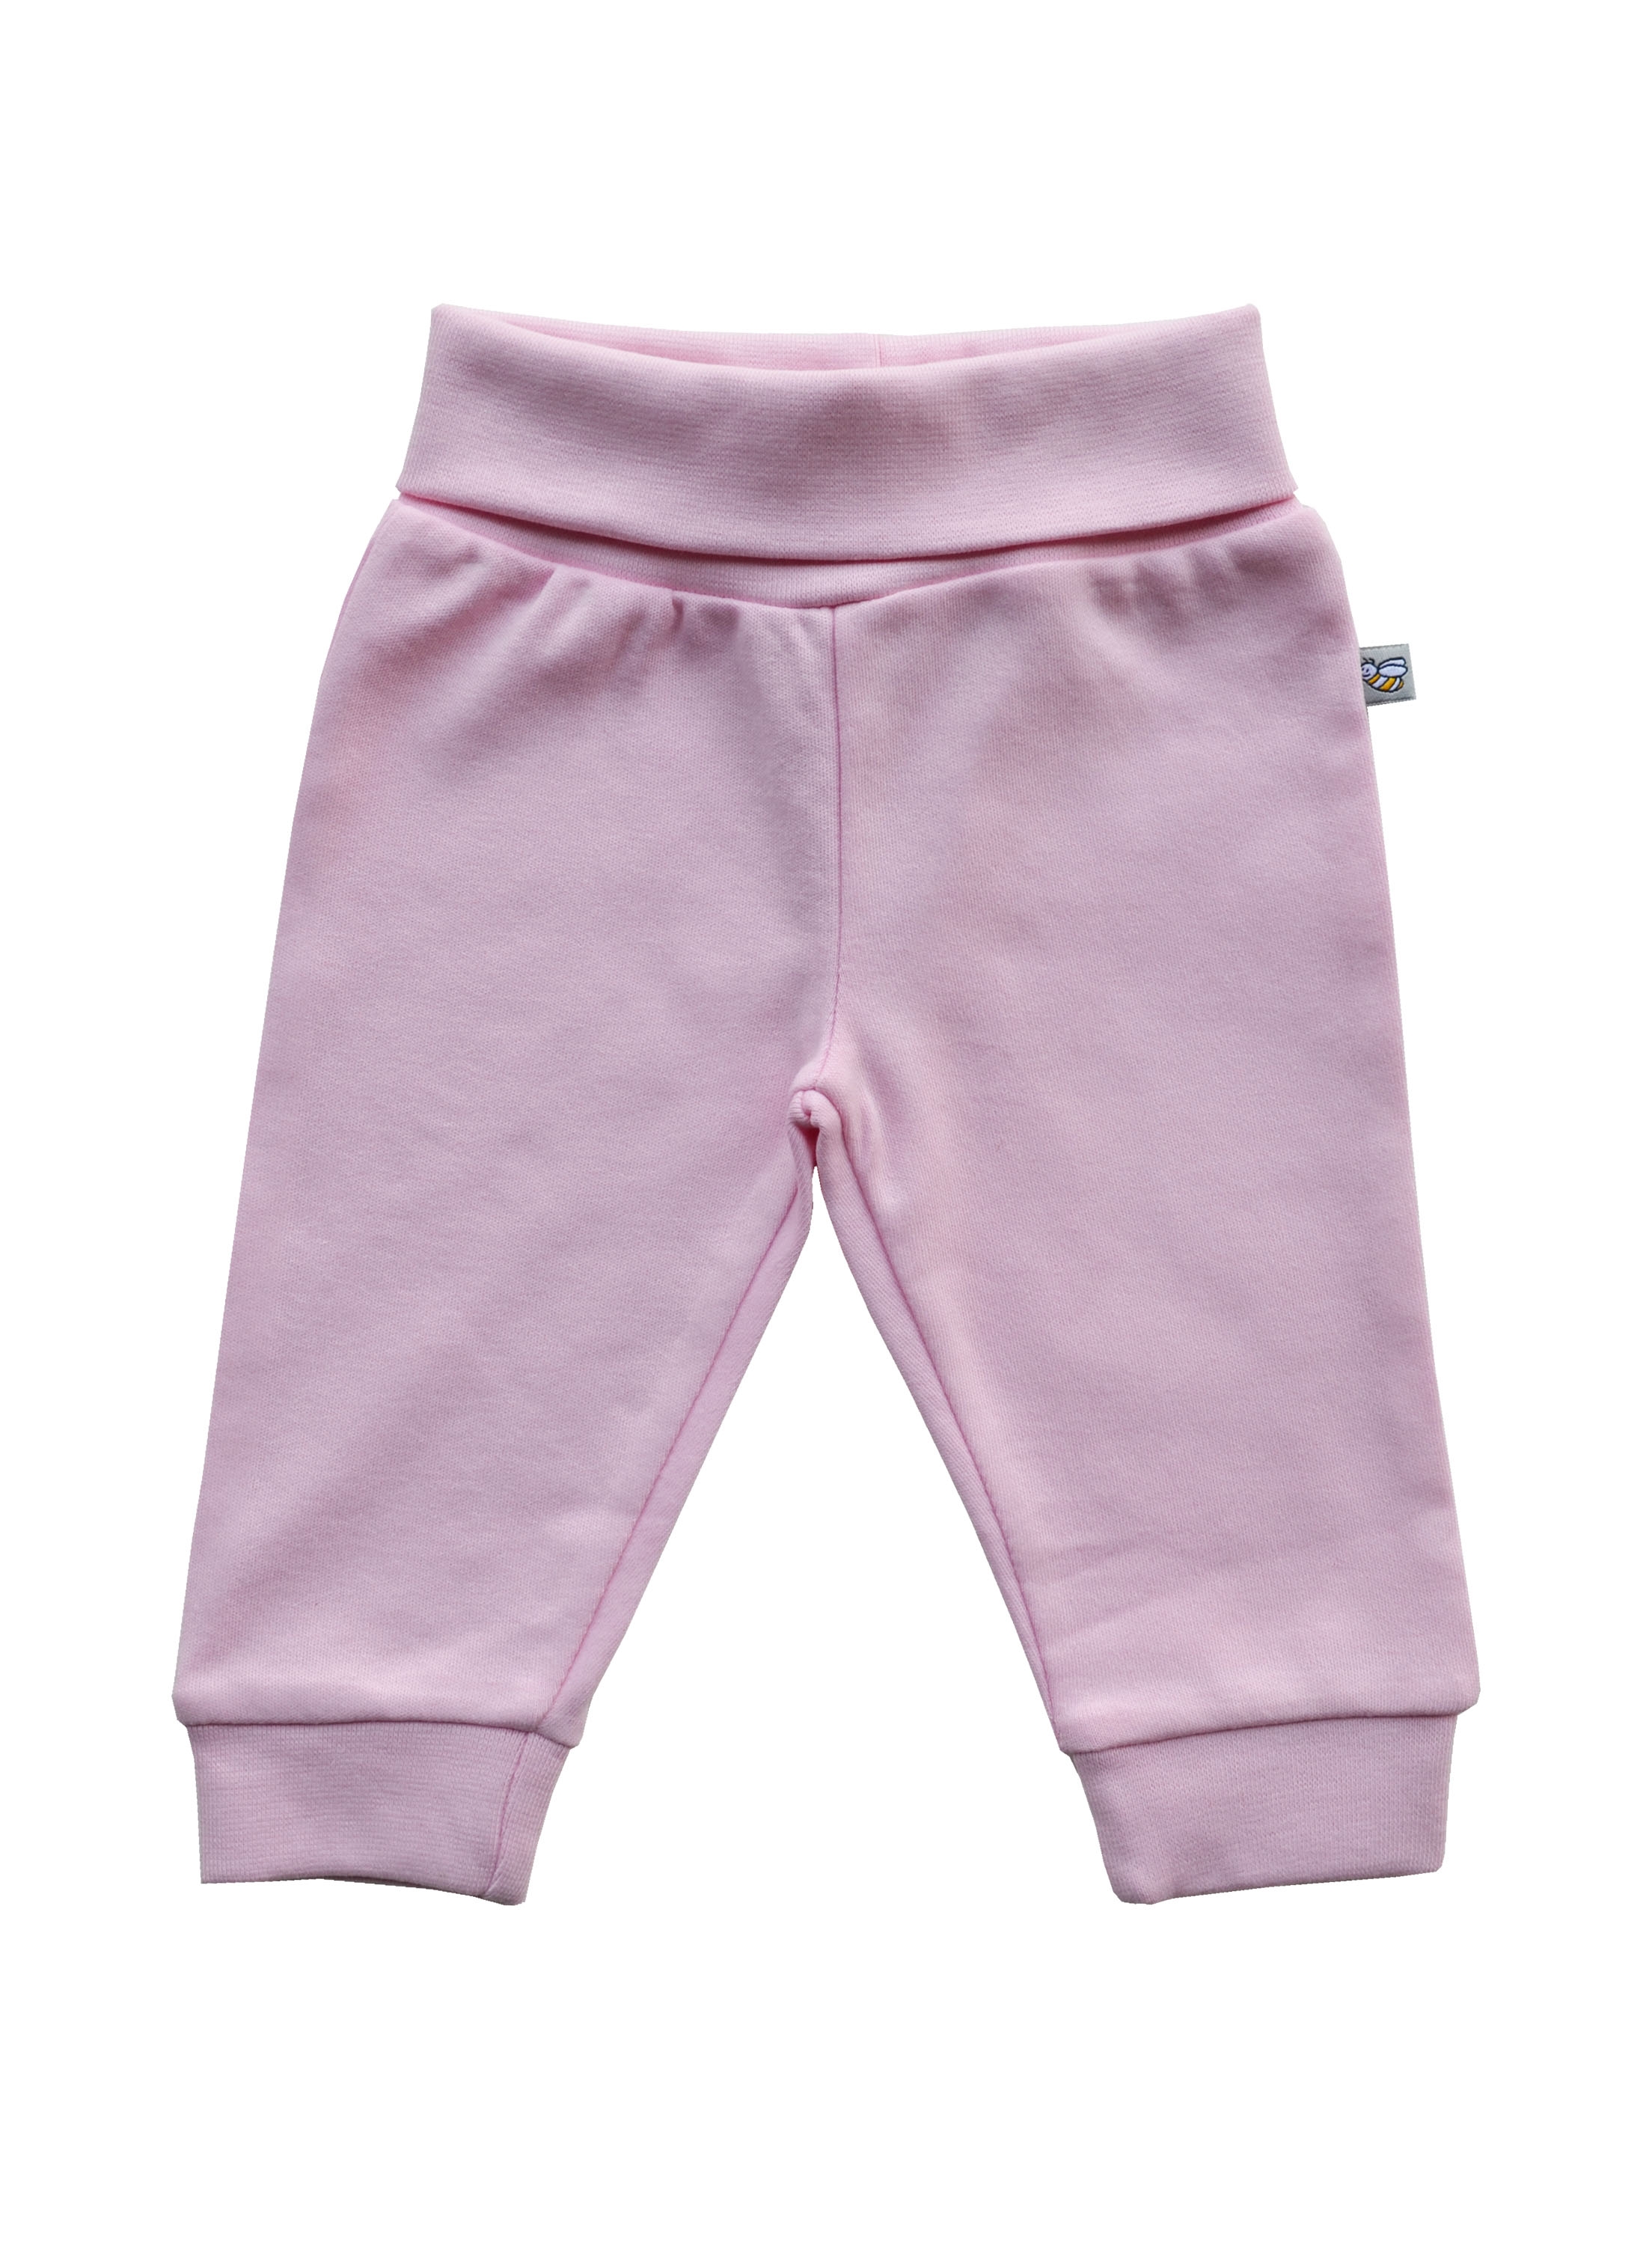 Pink Pant (100% Cotton Interlock Biowash)